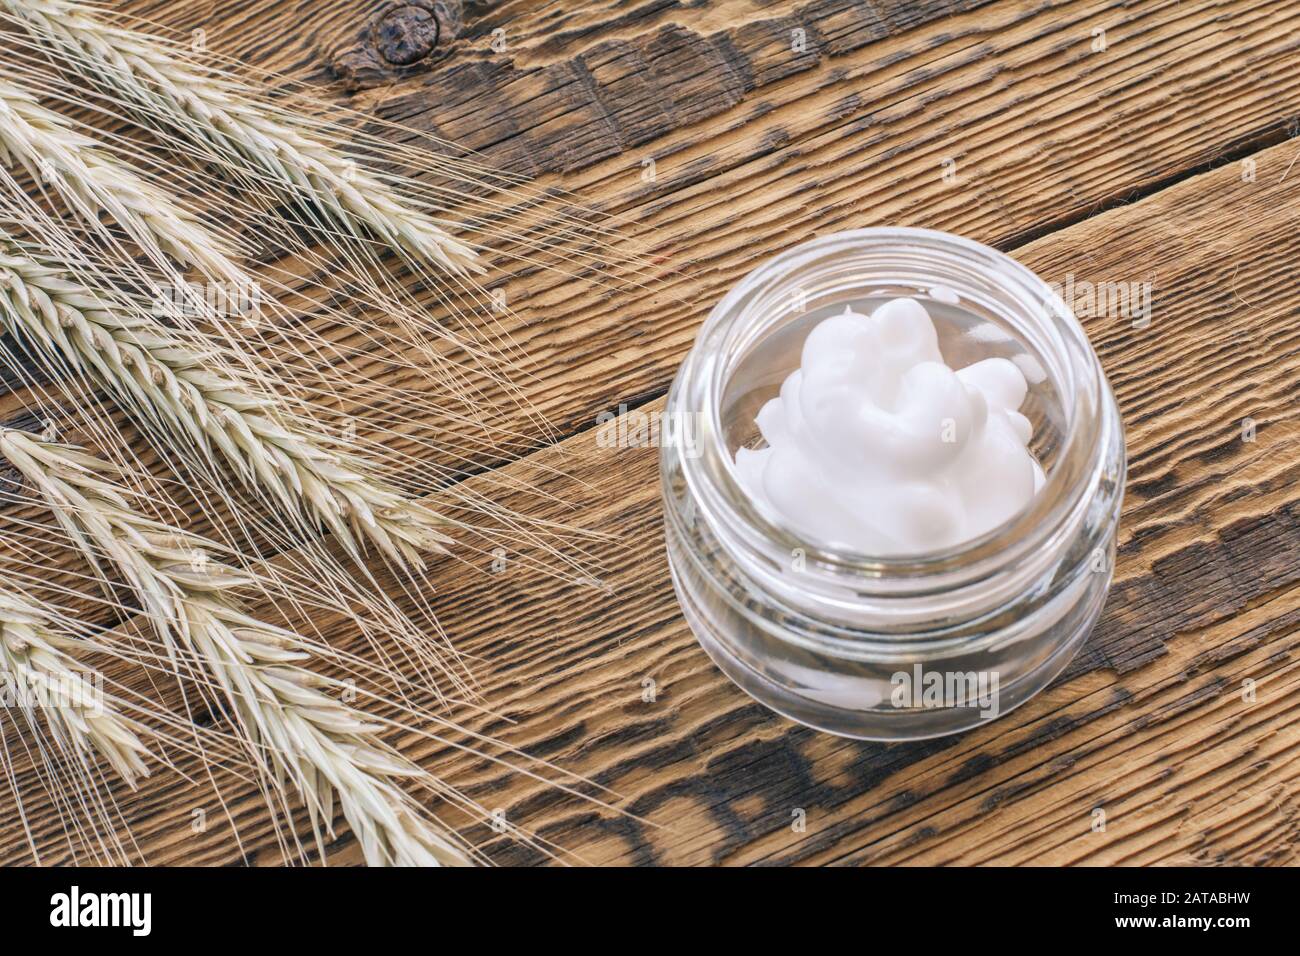 Crème cosmétique dans un bocal en verre et spiquets secs de blé sur de vieilles planches en bois. Vue de dessus. Banque D'Images